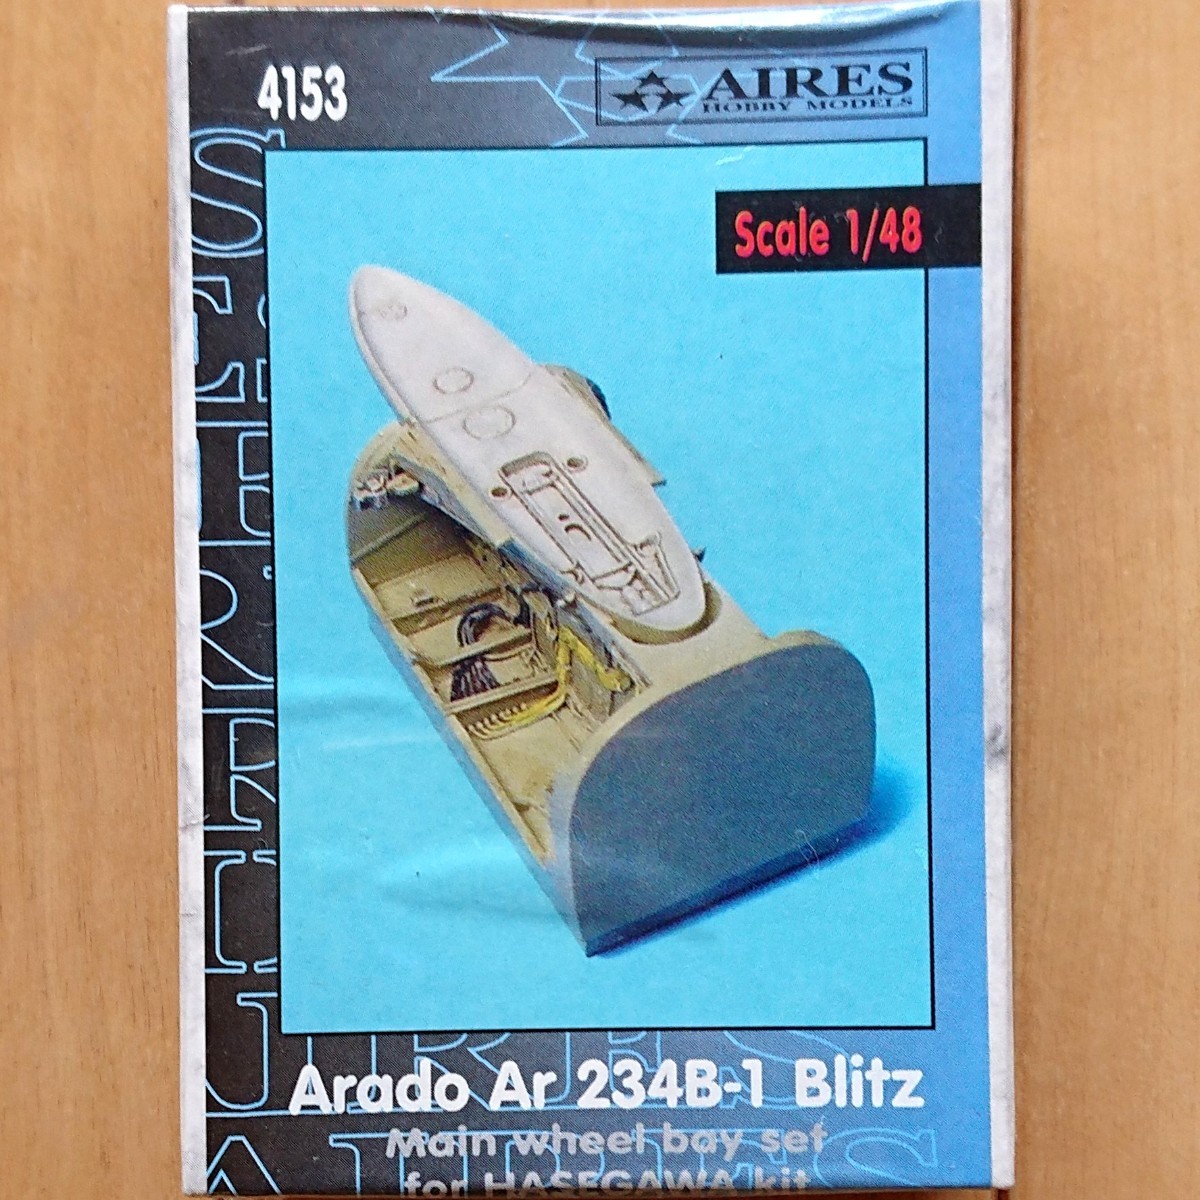 【新品、未開封】AIRES アイリス 4153 1/48 Arado アラド Ar234B-1 Blitz ブリッツ Main wheel bay 主脚収納庫ディテールセット ハセガワ用_画像1